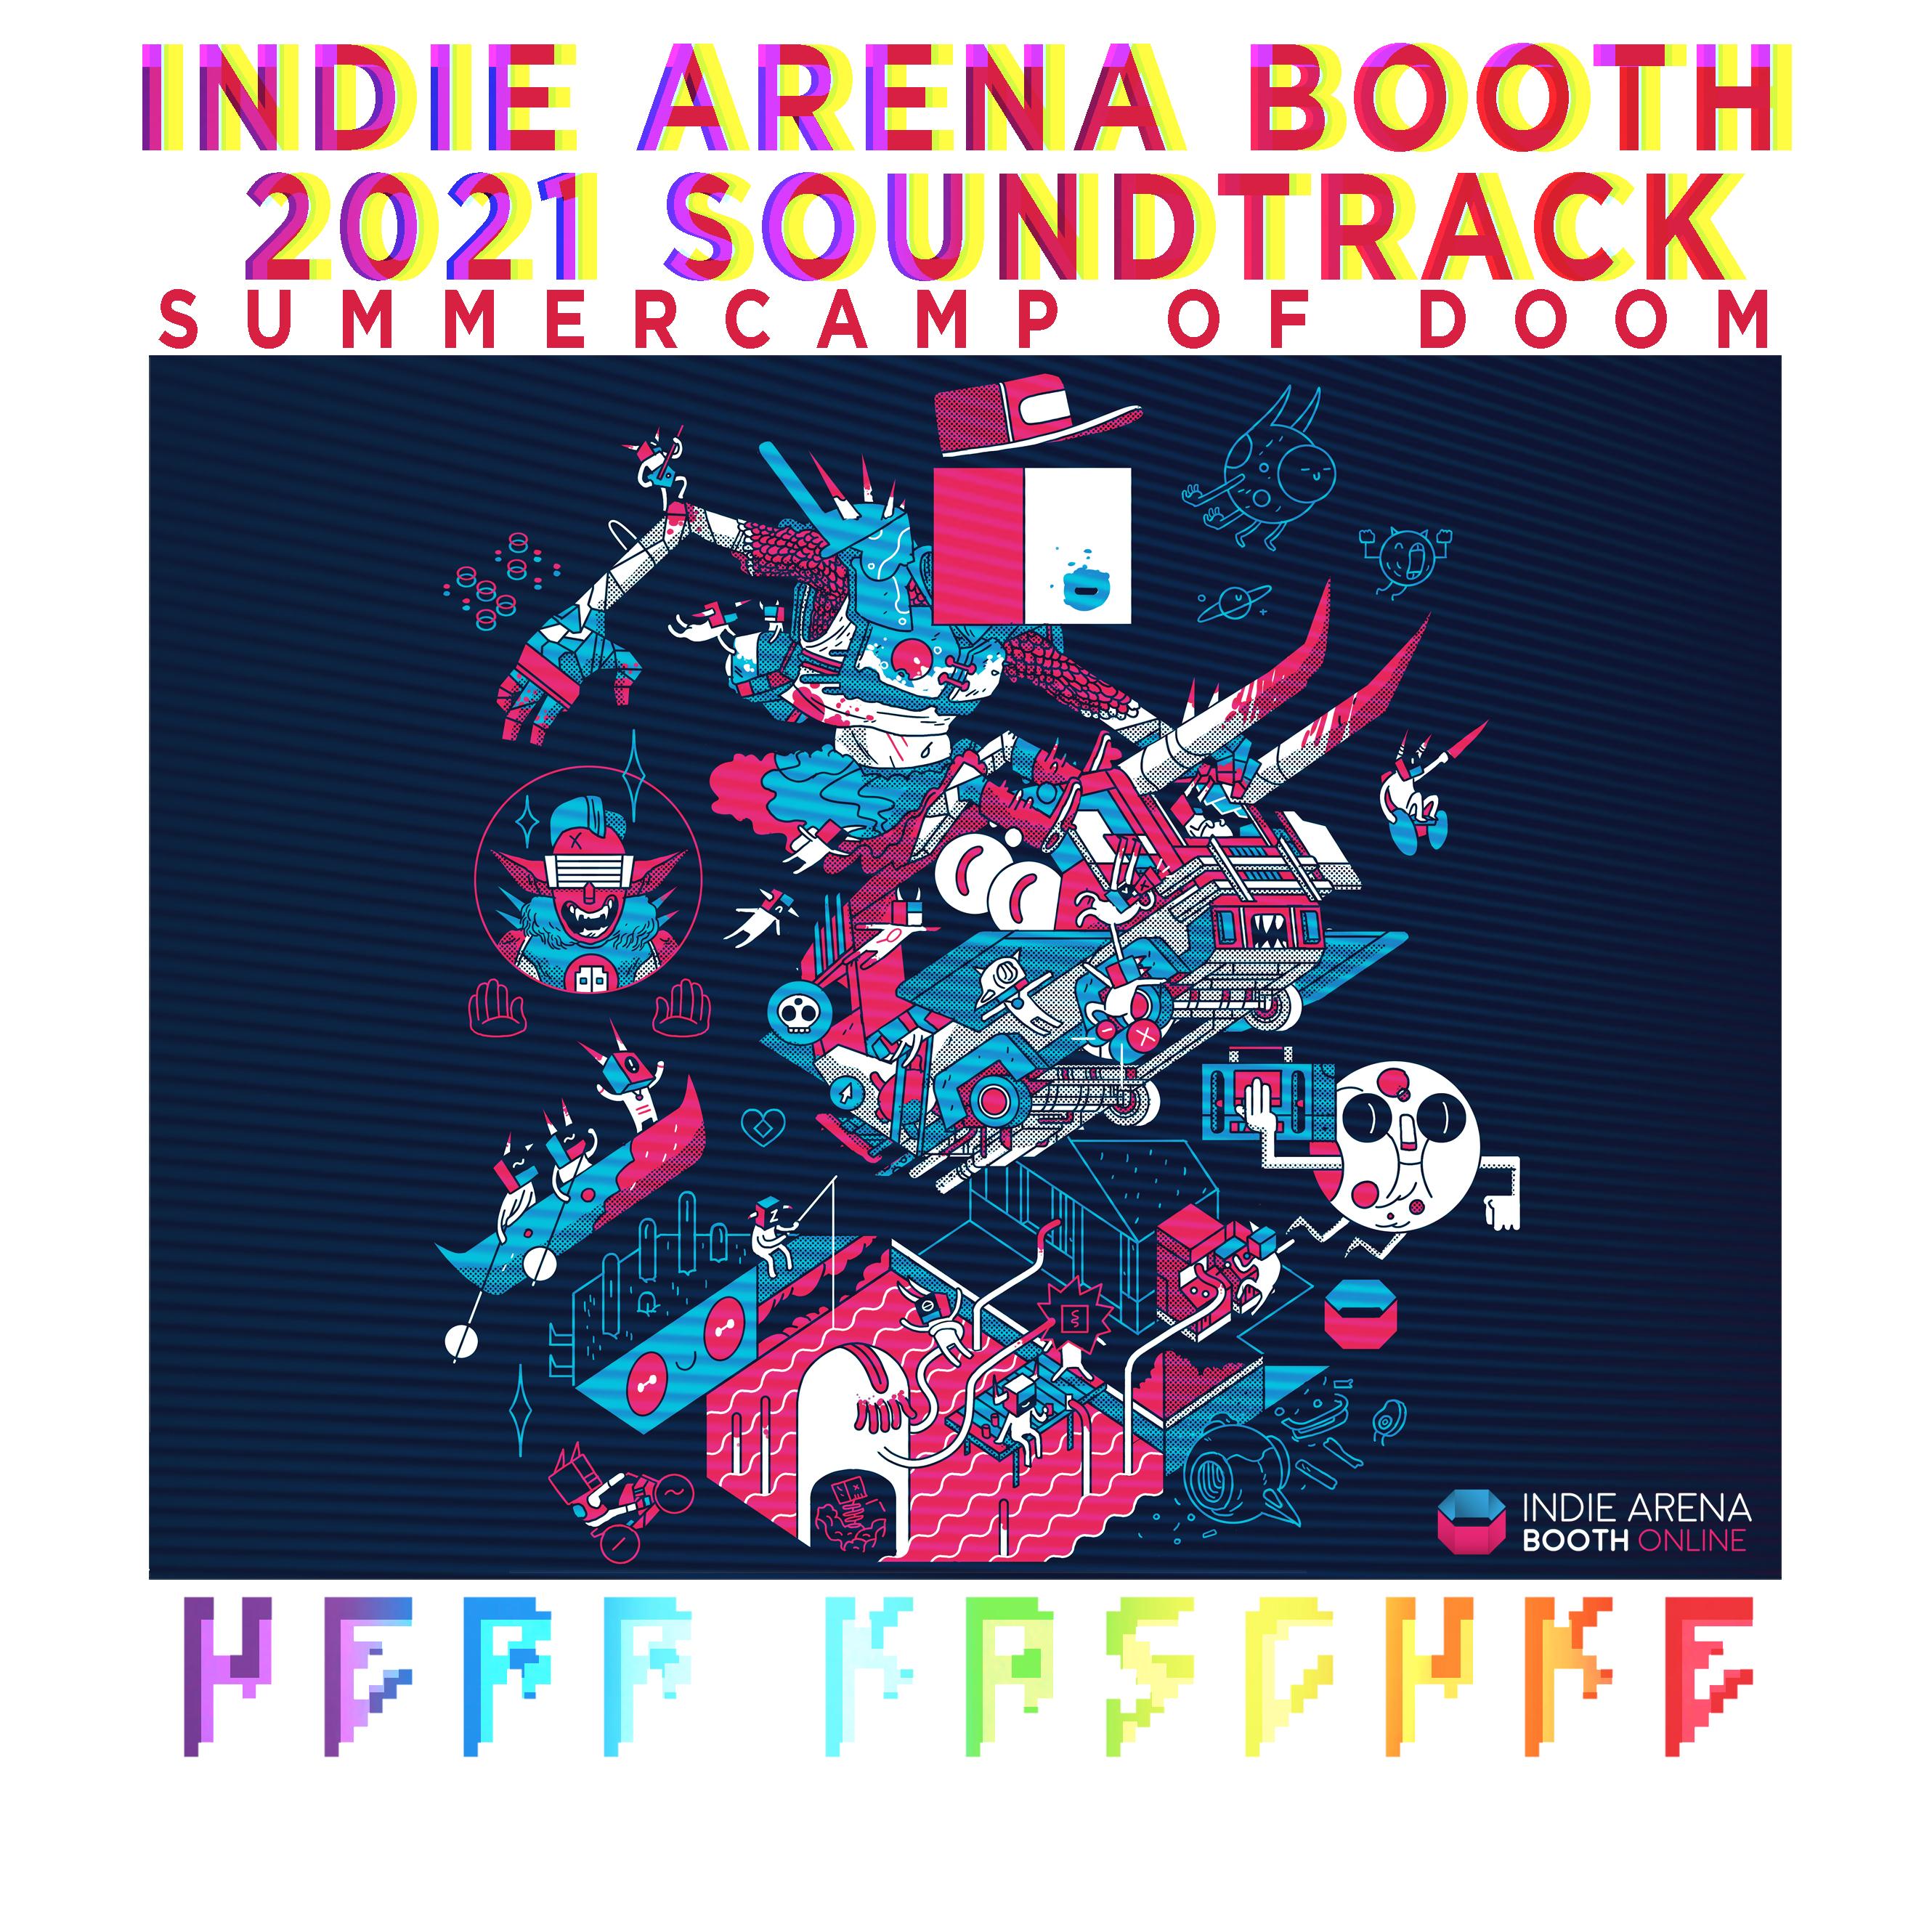 Indie Arena Booth 2021 Soundtrack (Summercamp of Doom)